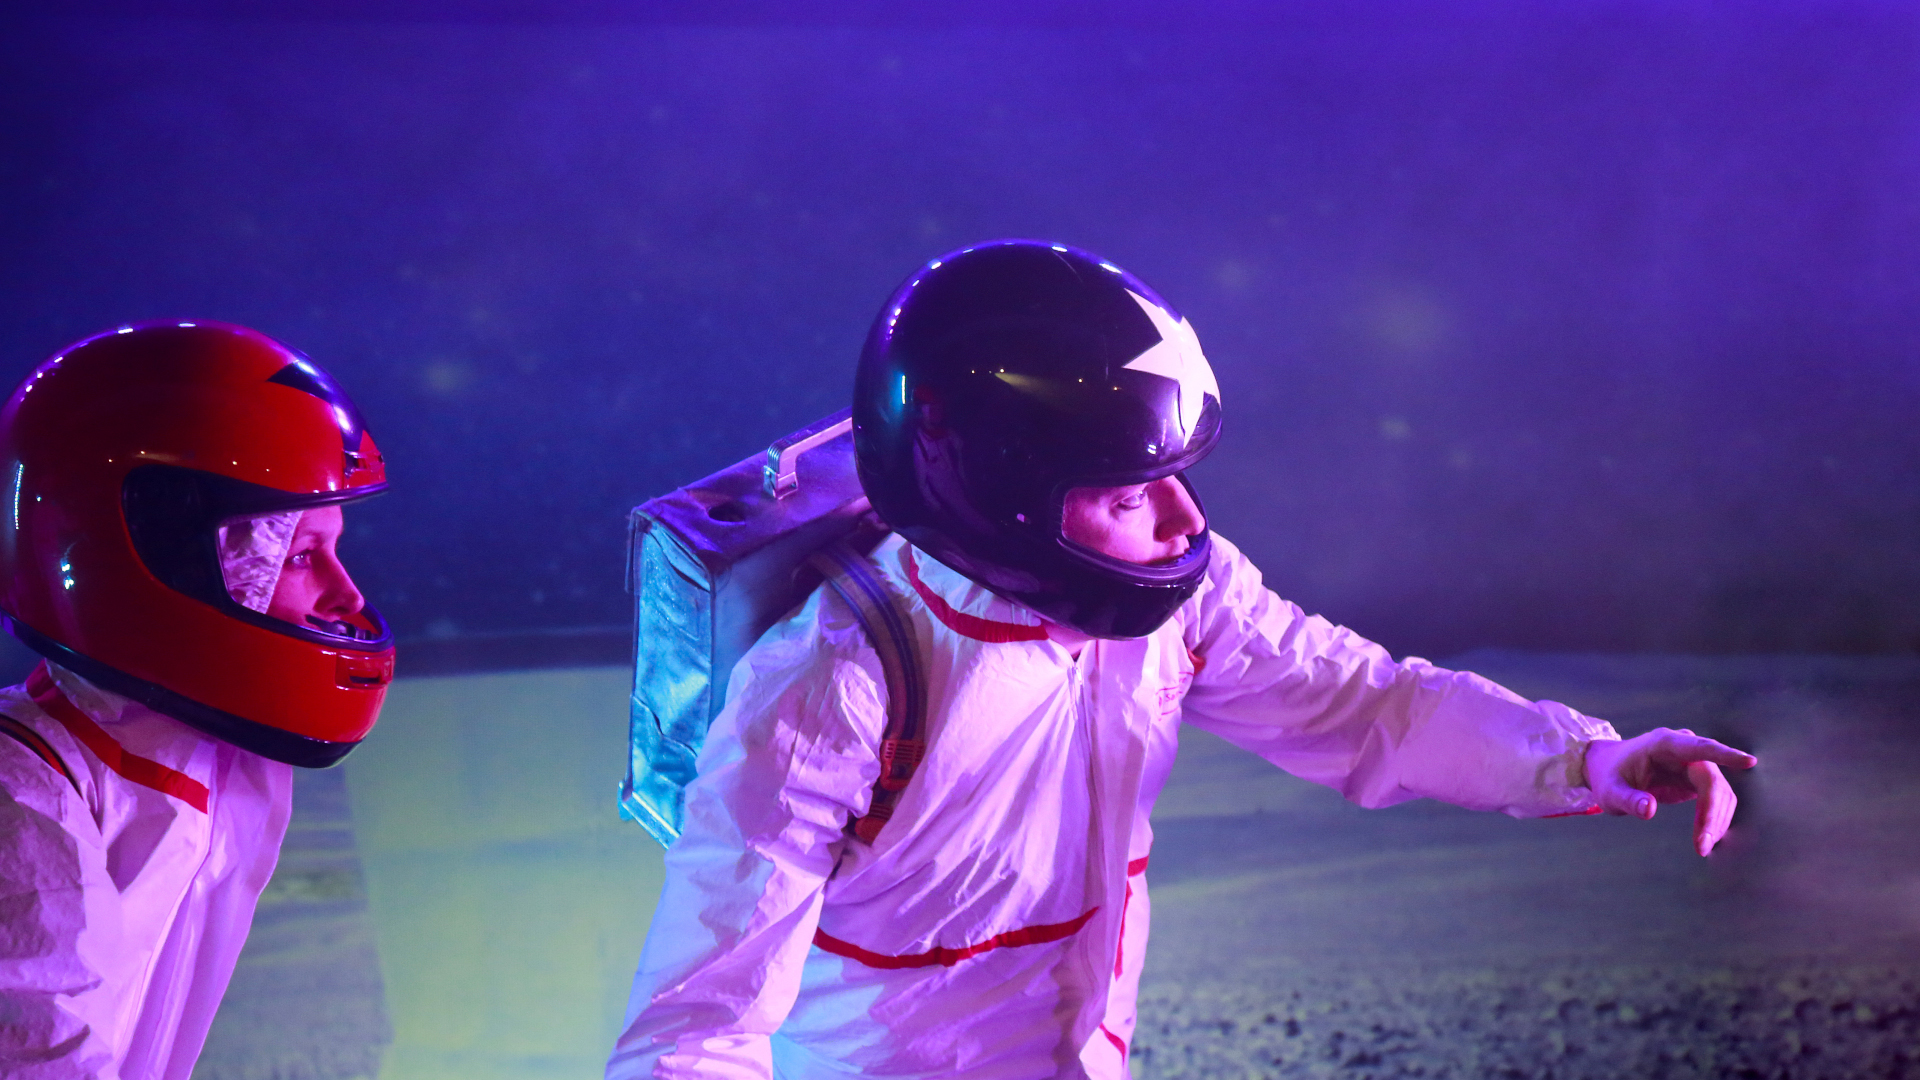 Zwei Astronauten mit Motoradhelm und Scout-Tornister auf Entdeckungstour.
Das VPT: Helden der Galaxis. Foto: Daniela Landwehr